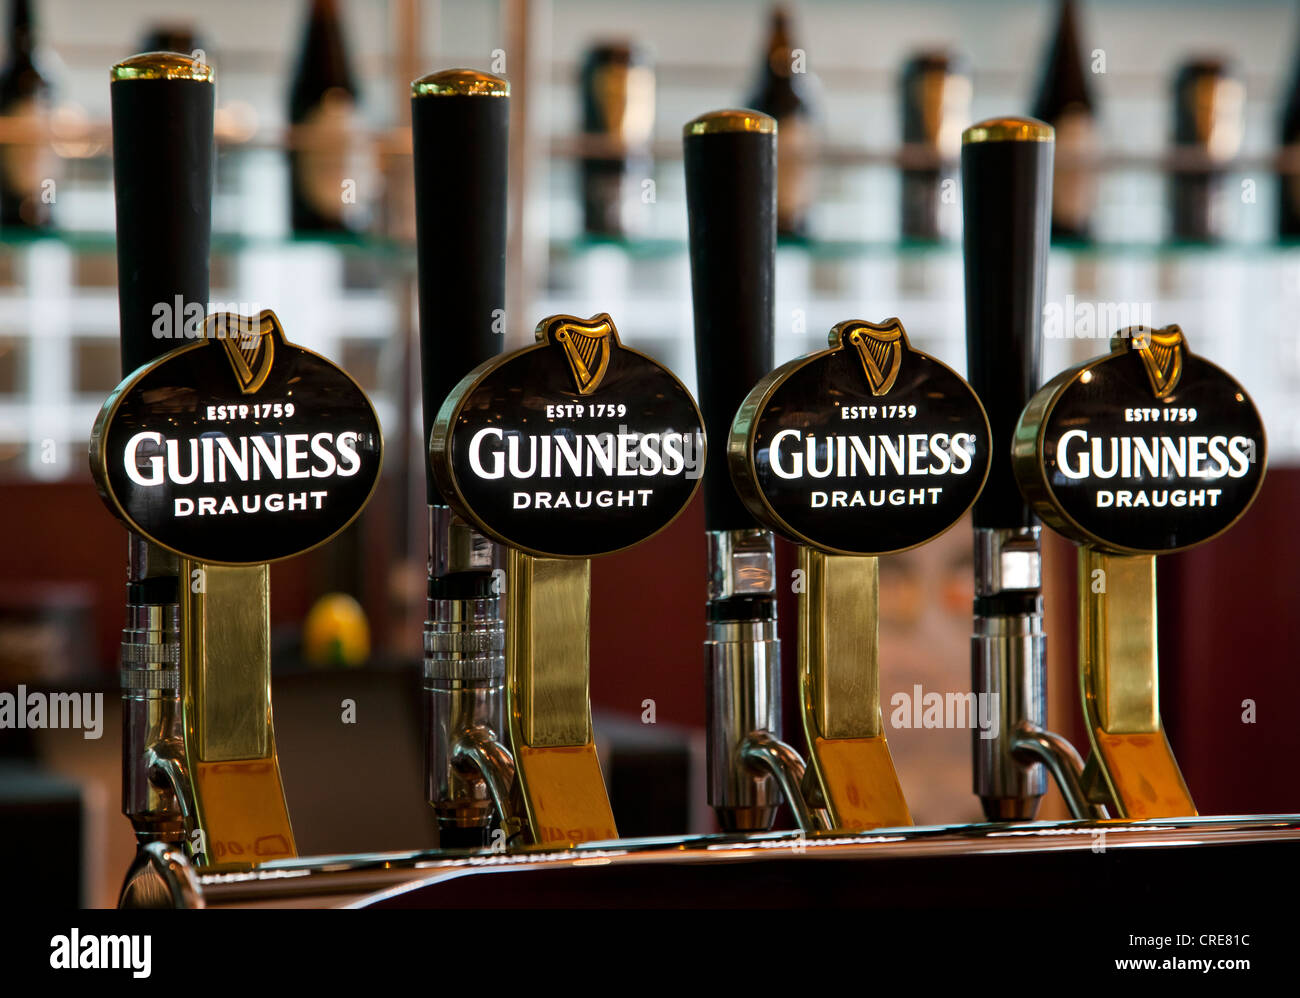 Rubinetti con il logo della Guinness in magazzino nel Guinness Brewery, parte della Diageo drinks company, Dublino, Irlanda Foto Stock